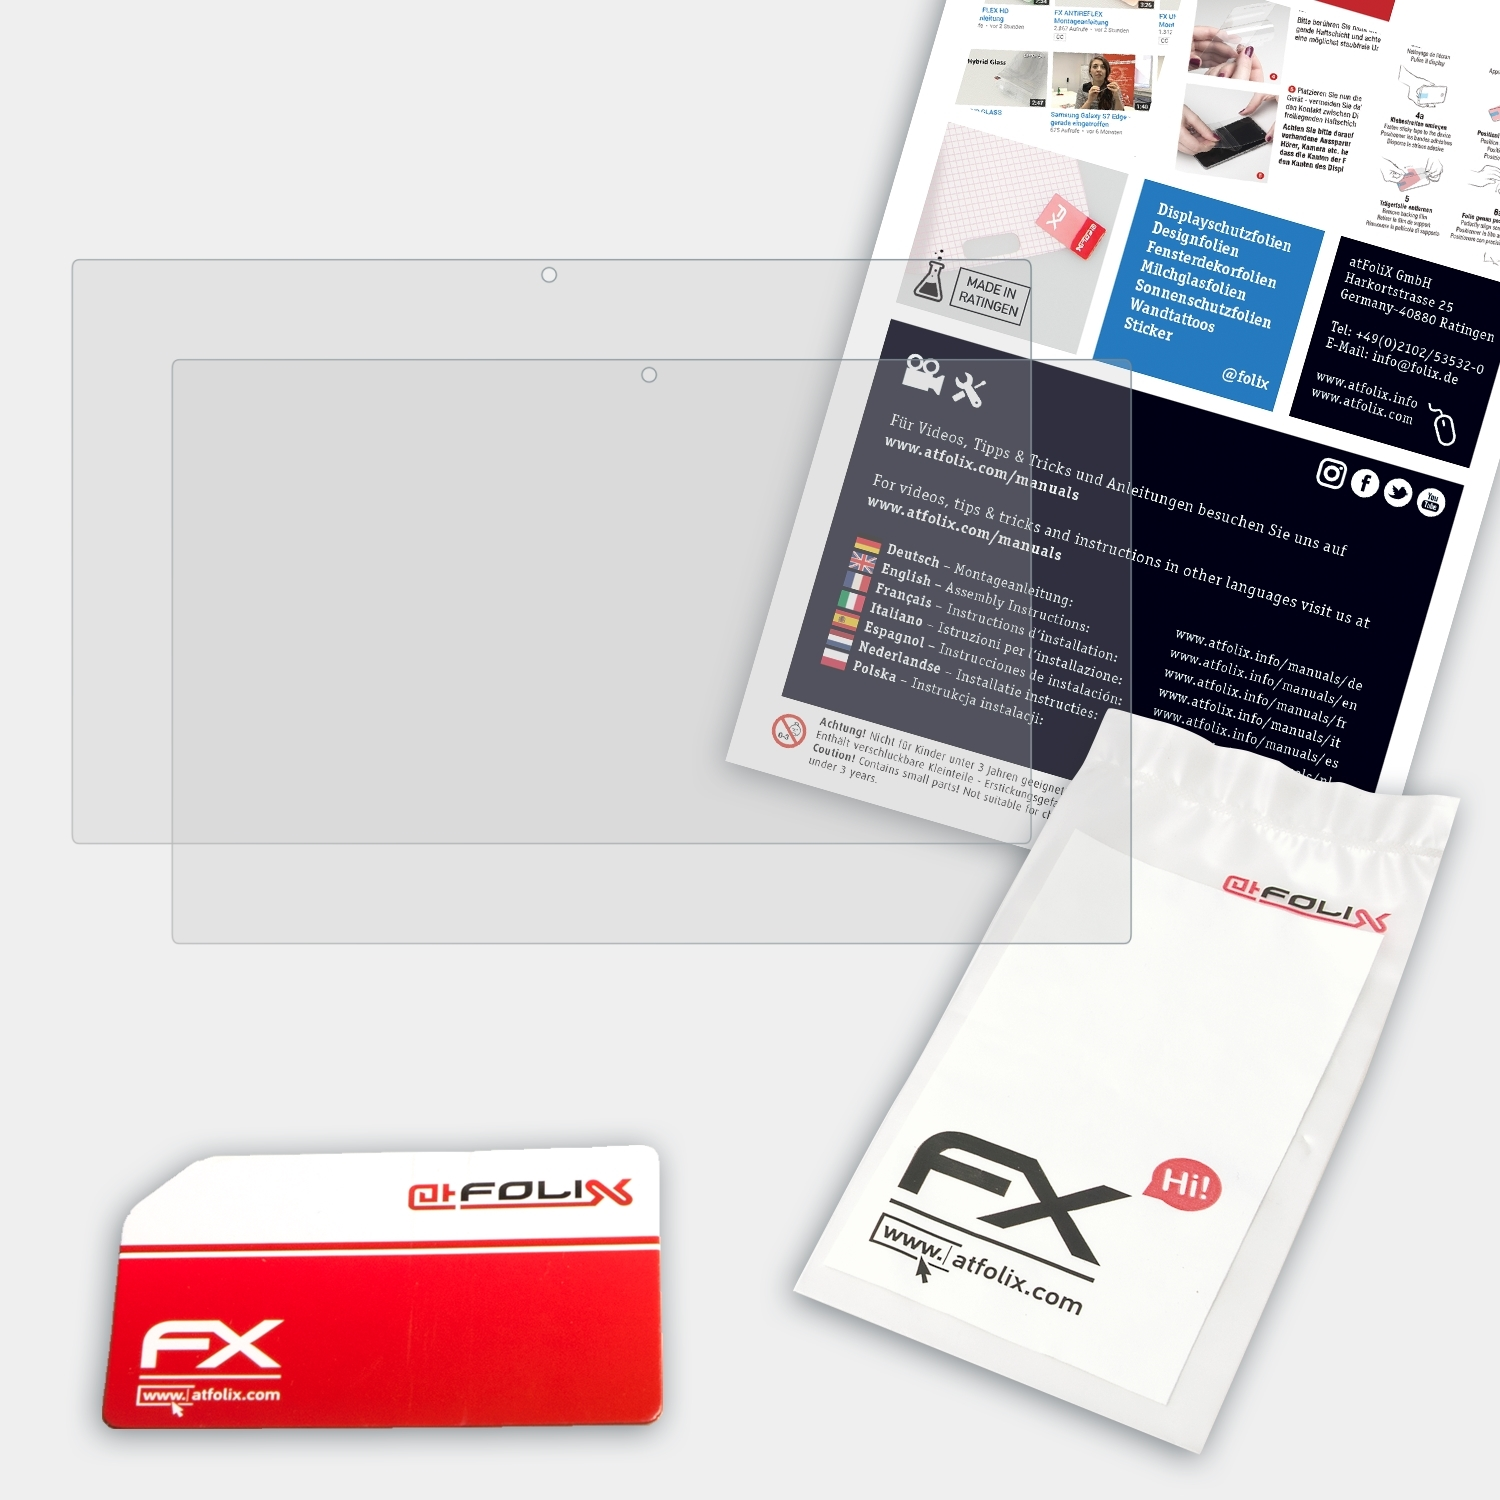 Xoro Displayschutz(für 2x 2154) MegaPad ATFOLIX FX-Antireflex